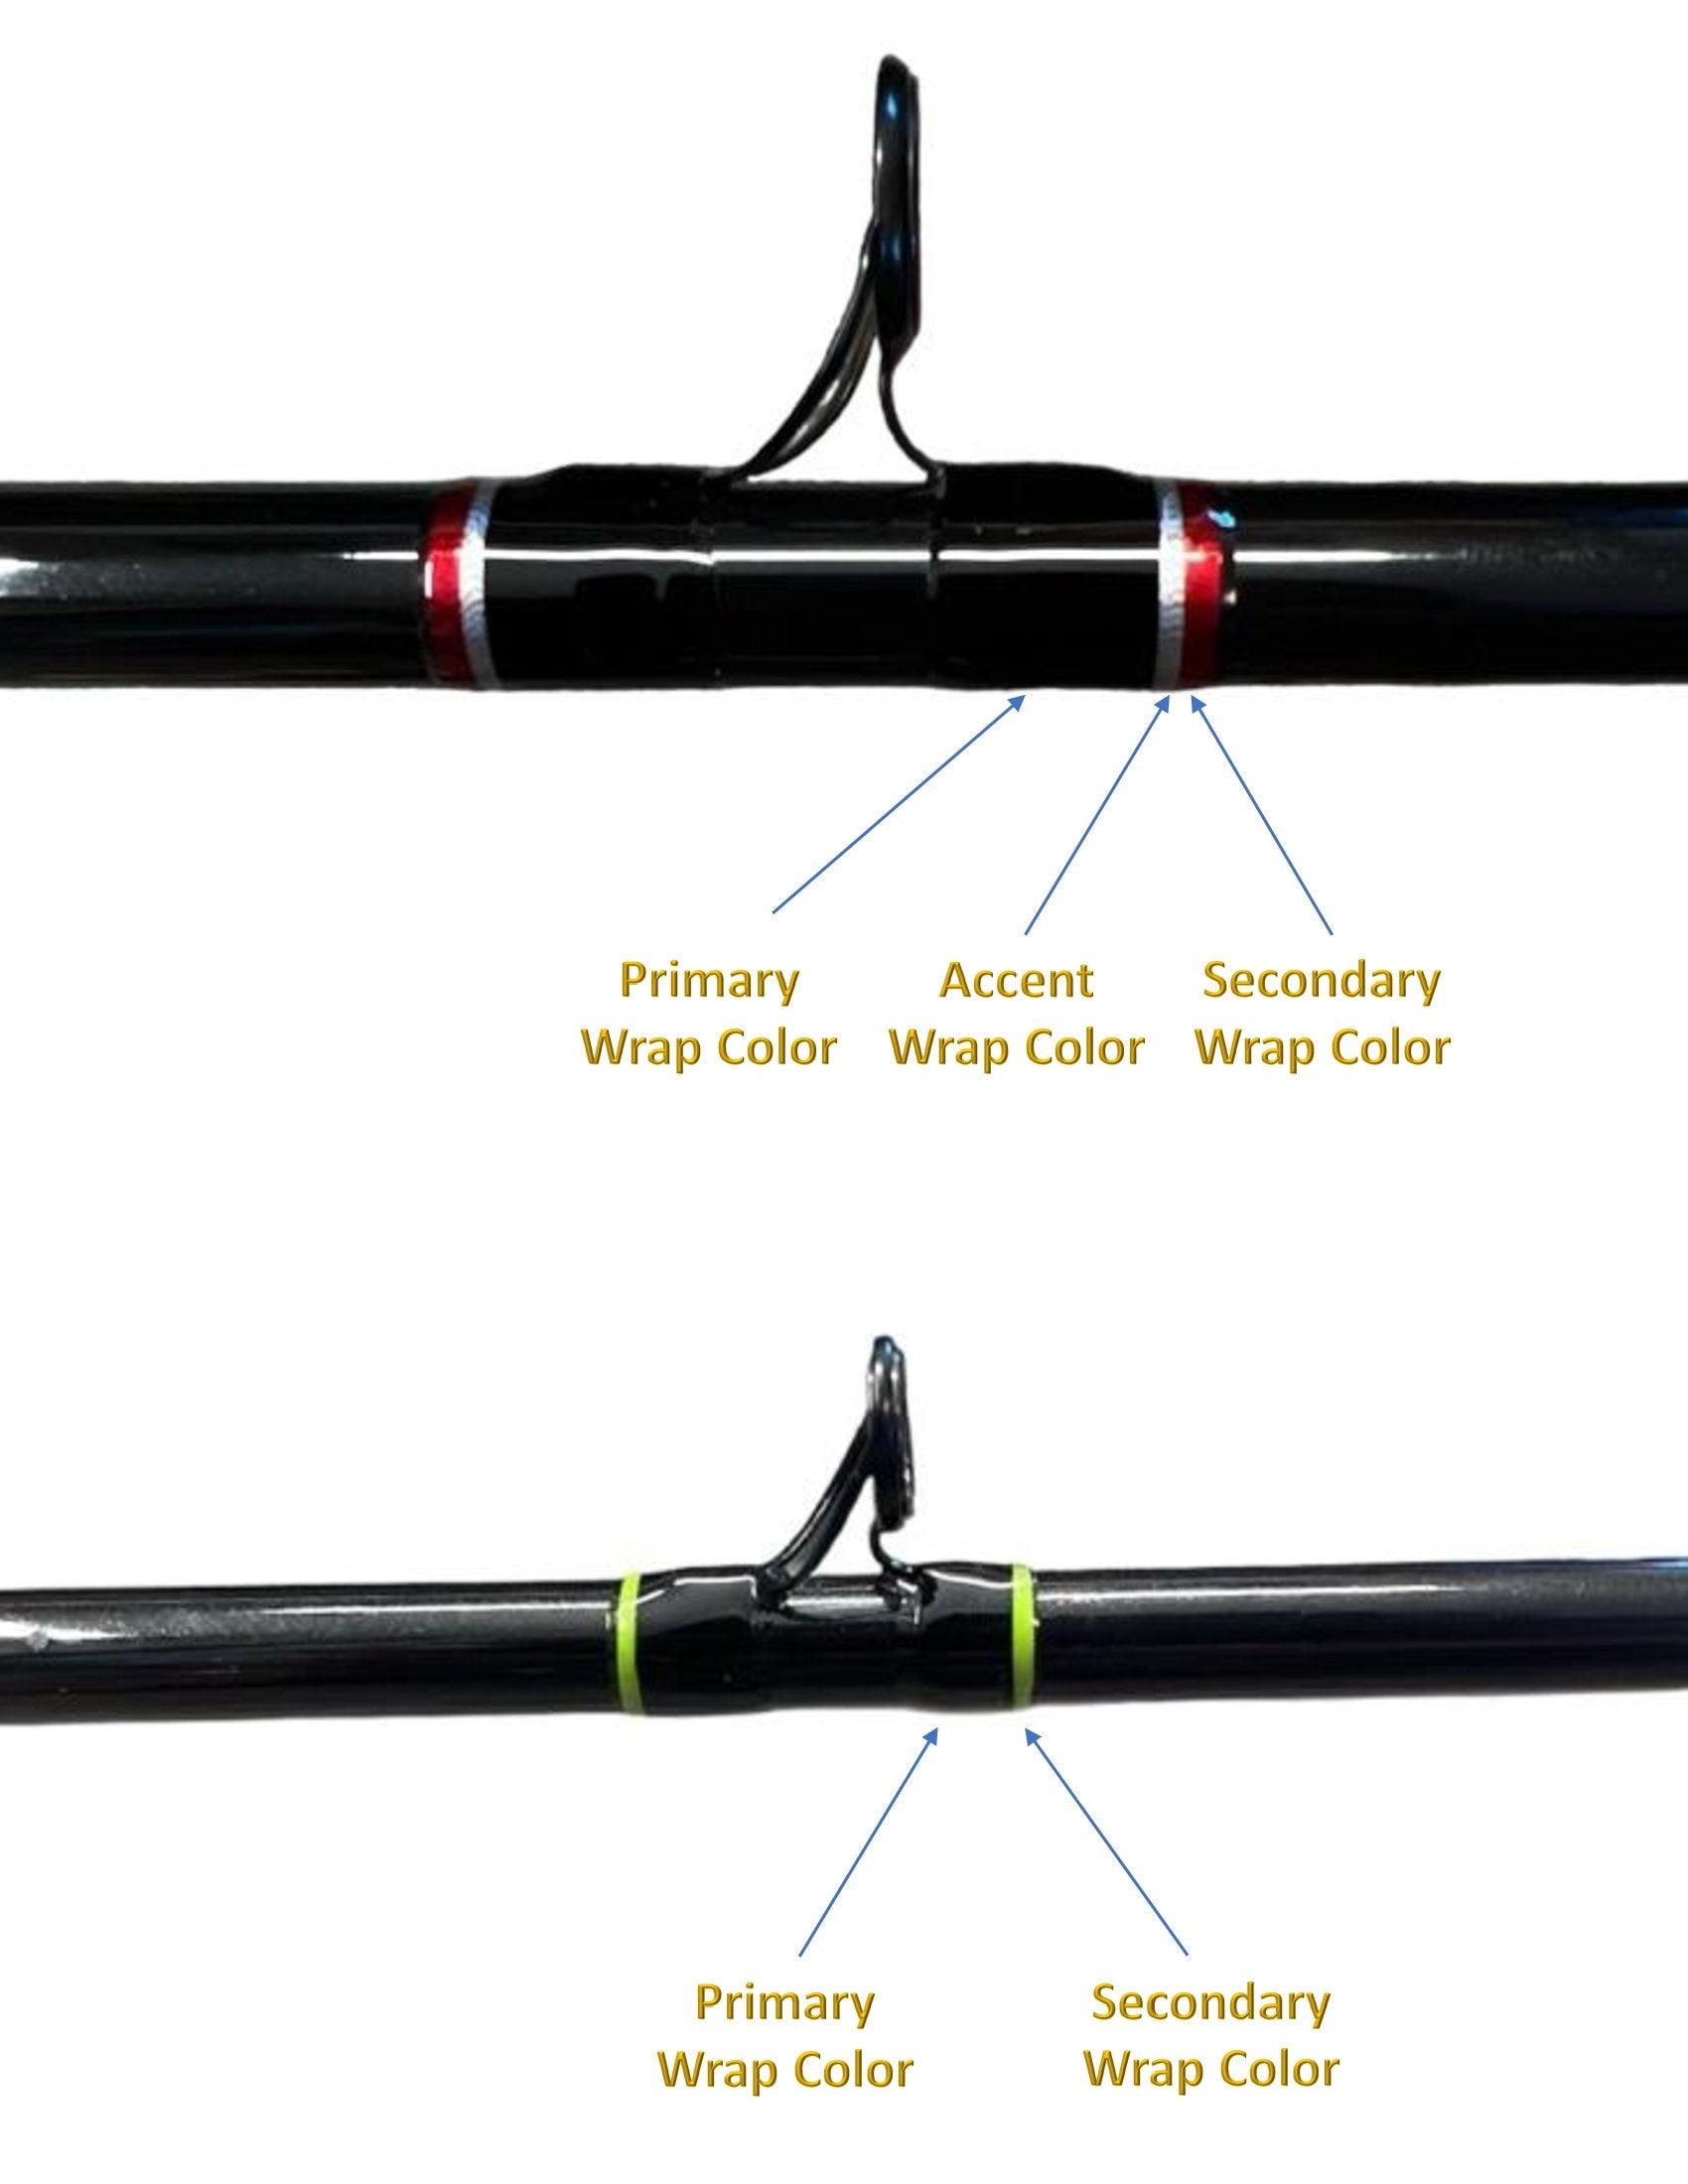 Kingdom King Pro Fishing Rod, Carbon Fiber Fishing Rods